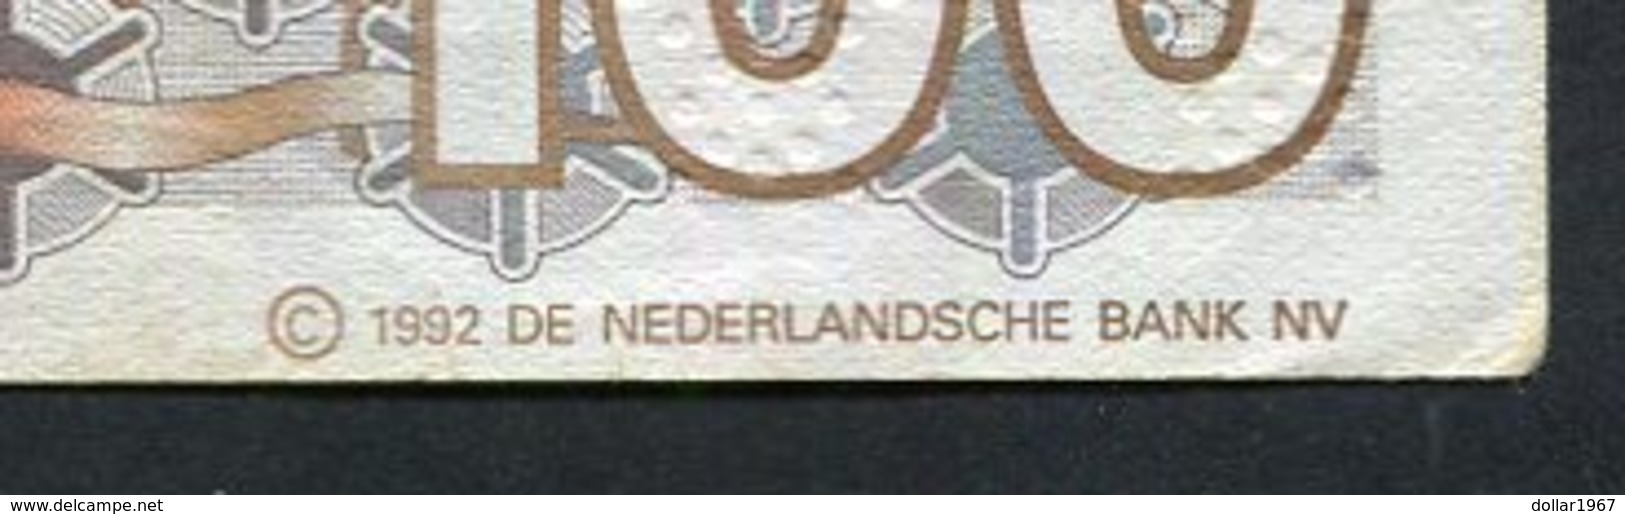 Banknote 100 gulden 'Steenuil' 1992 NetherlandsHolland